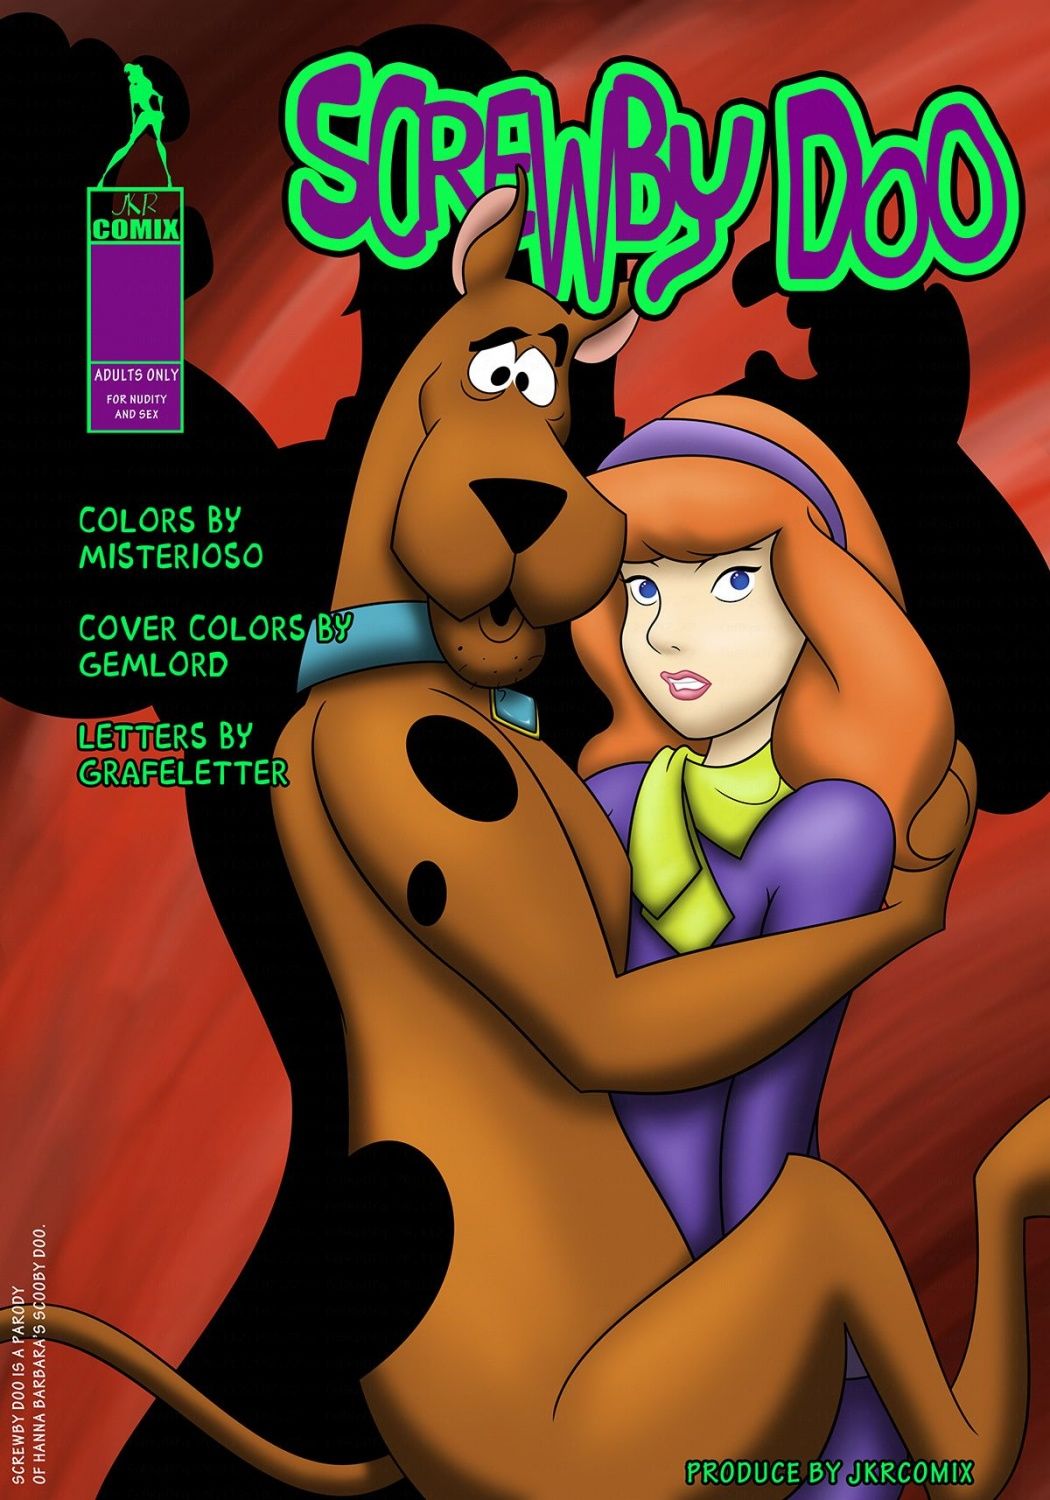 Screwby Doo (Scooby-Doo) [JKRComix] - 1 . Screwby Doo - Chapter 1 (Scooby- Doo) [JKRComix] - AllPornComic